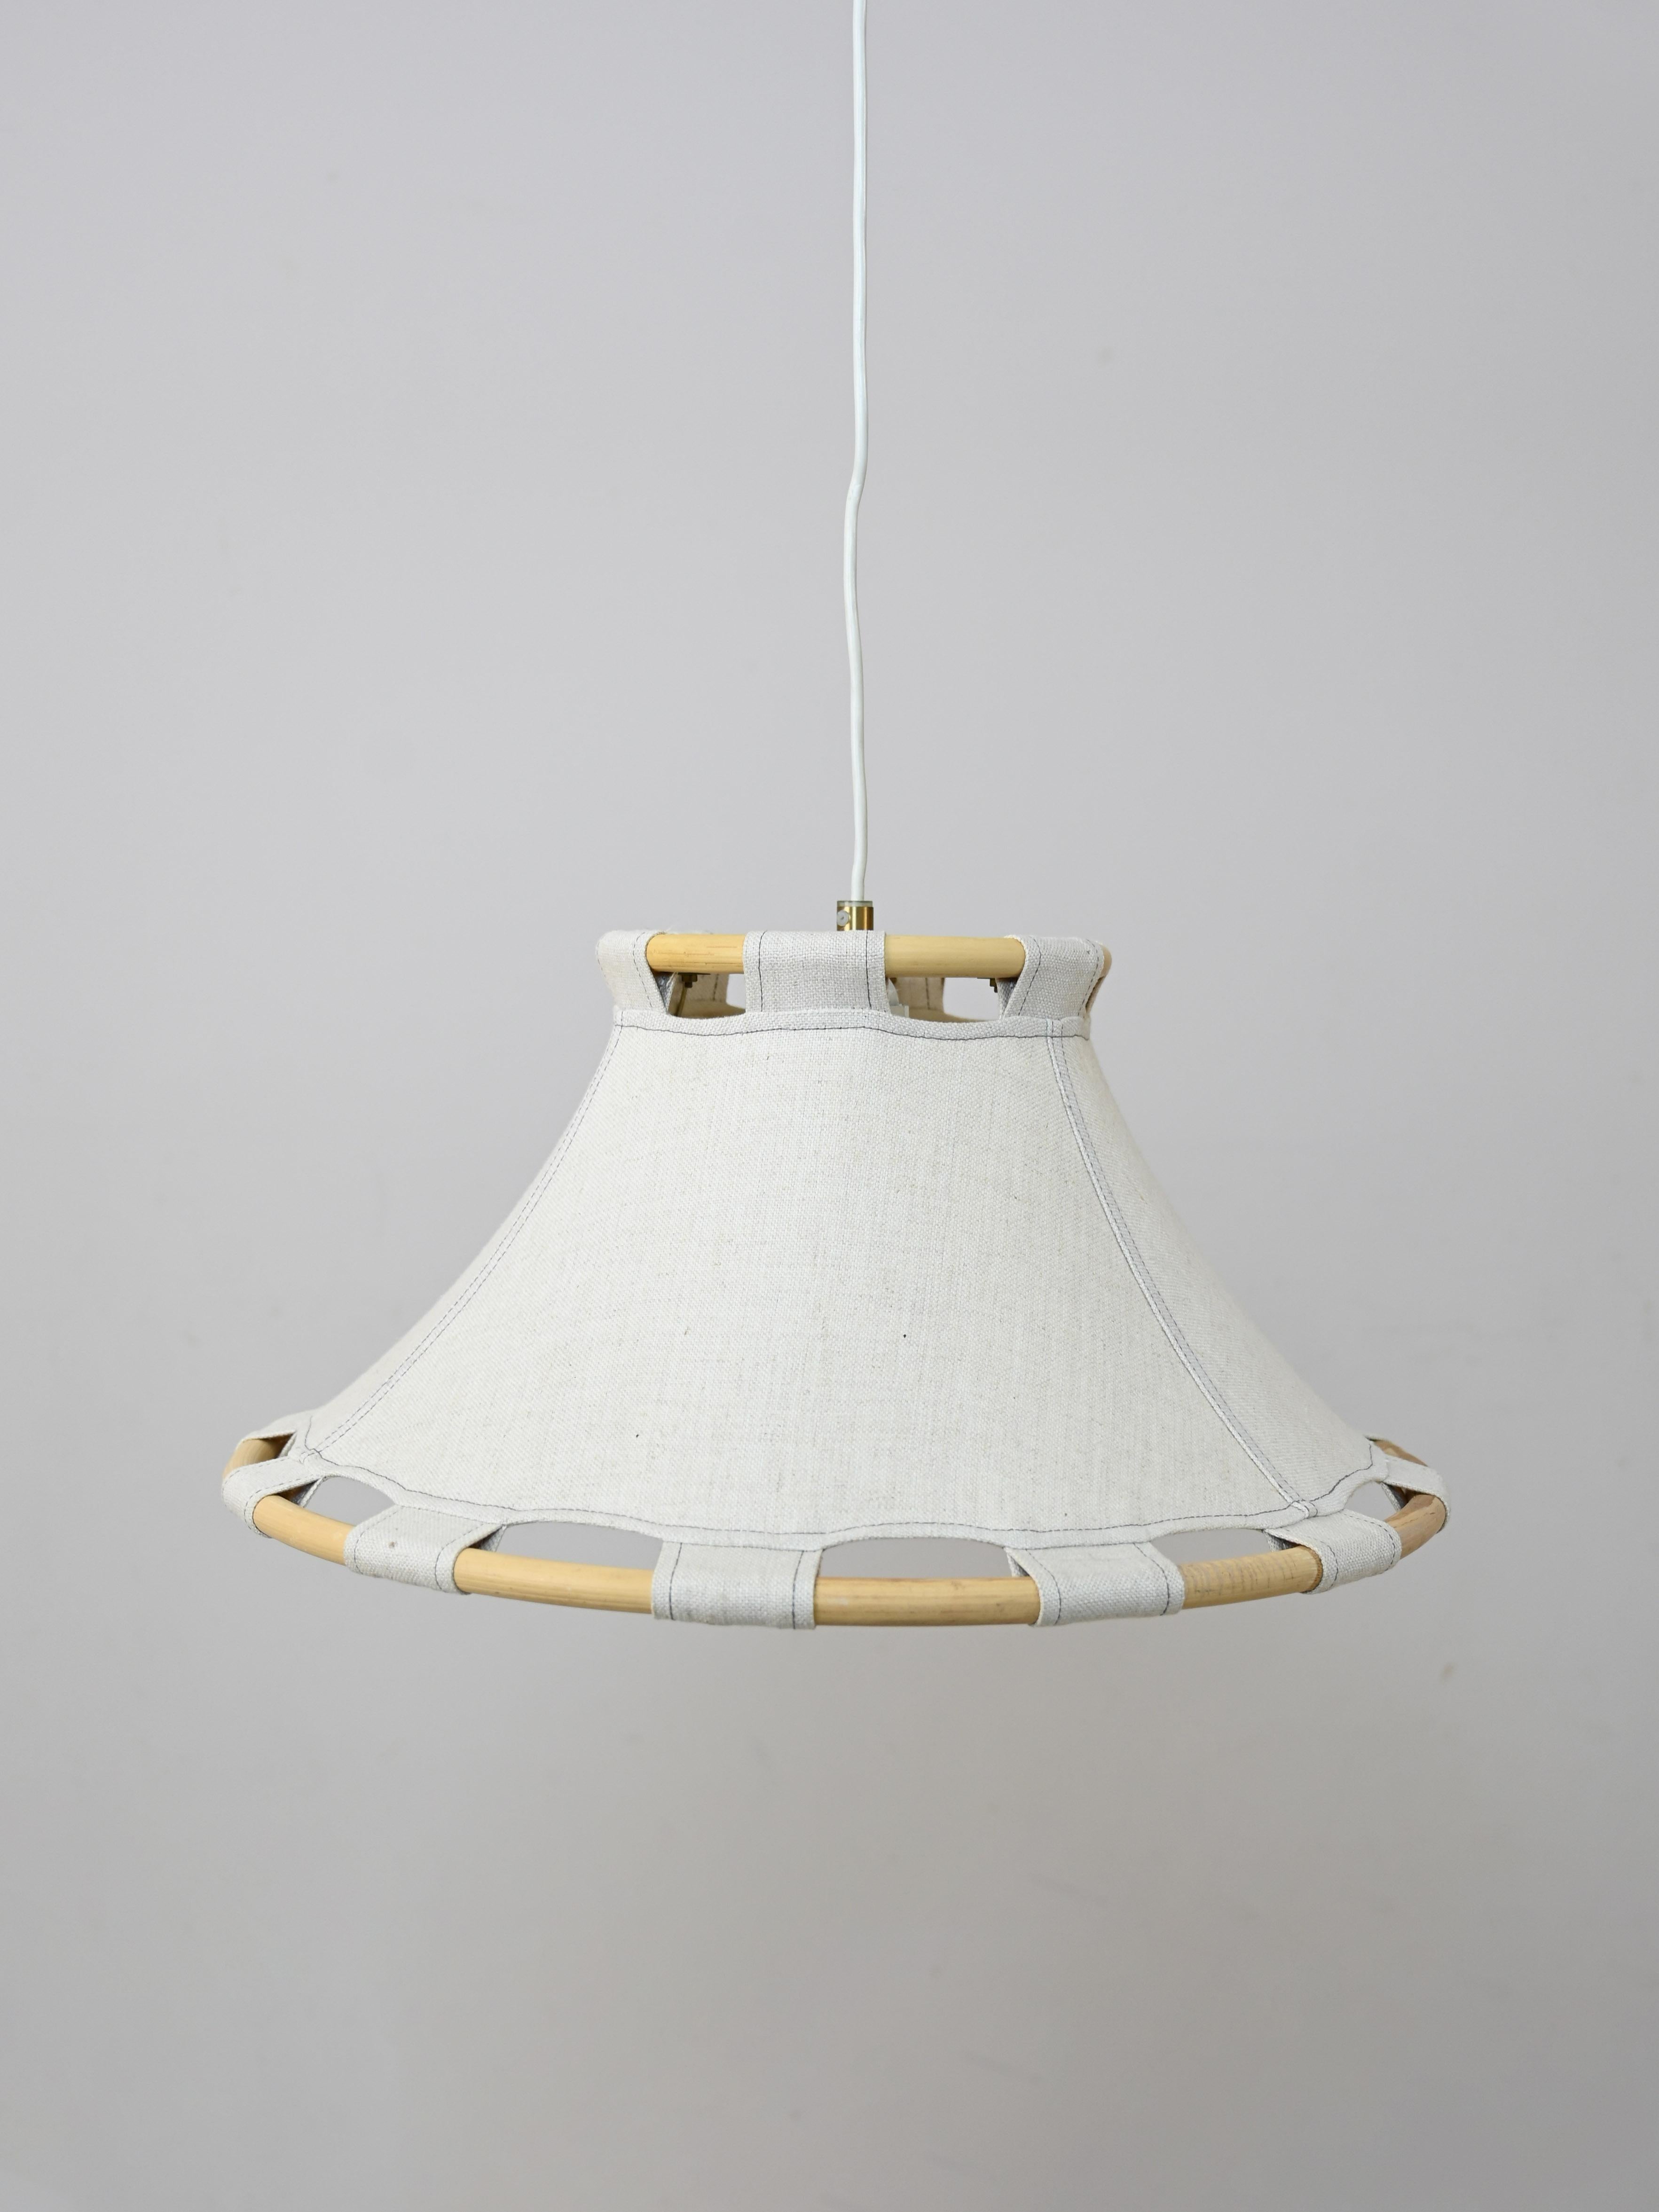 Vintage-Lampe, entworfen für Ateljé Lyktan in den 1970er Jahren.

Dieses Stück originellen skandinavischen Designs ist eine elegante Mischung aus verschiedenen MATERIALEN. Der Schirm ist aus Segeltuch, das Gestell aus Bambus und das Licht wird durch